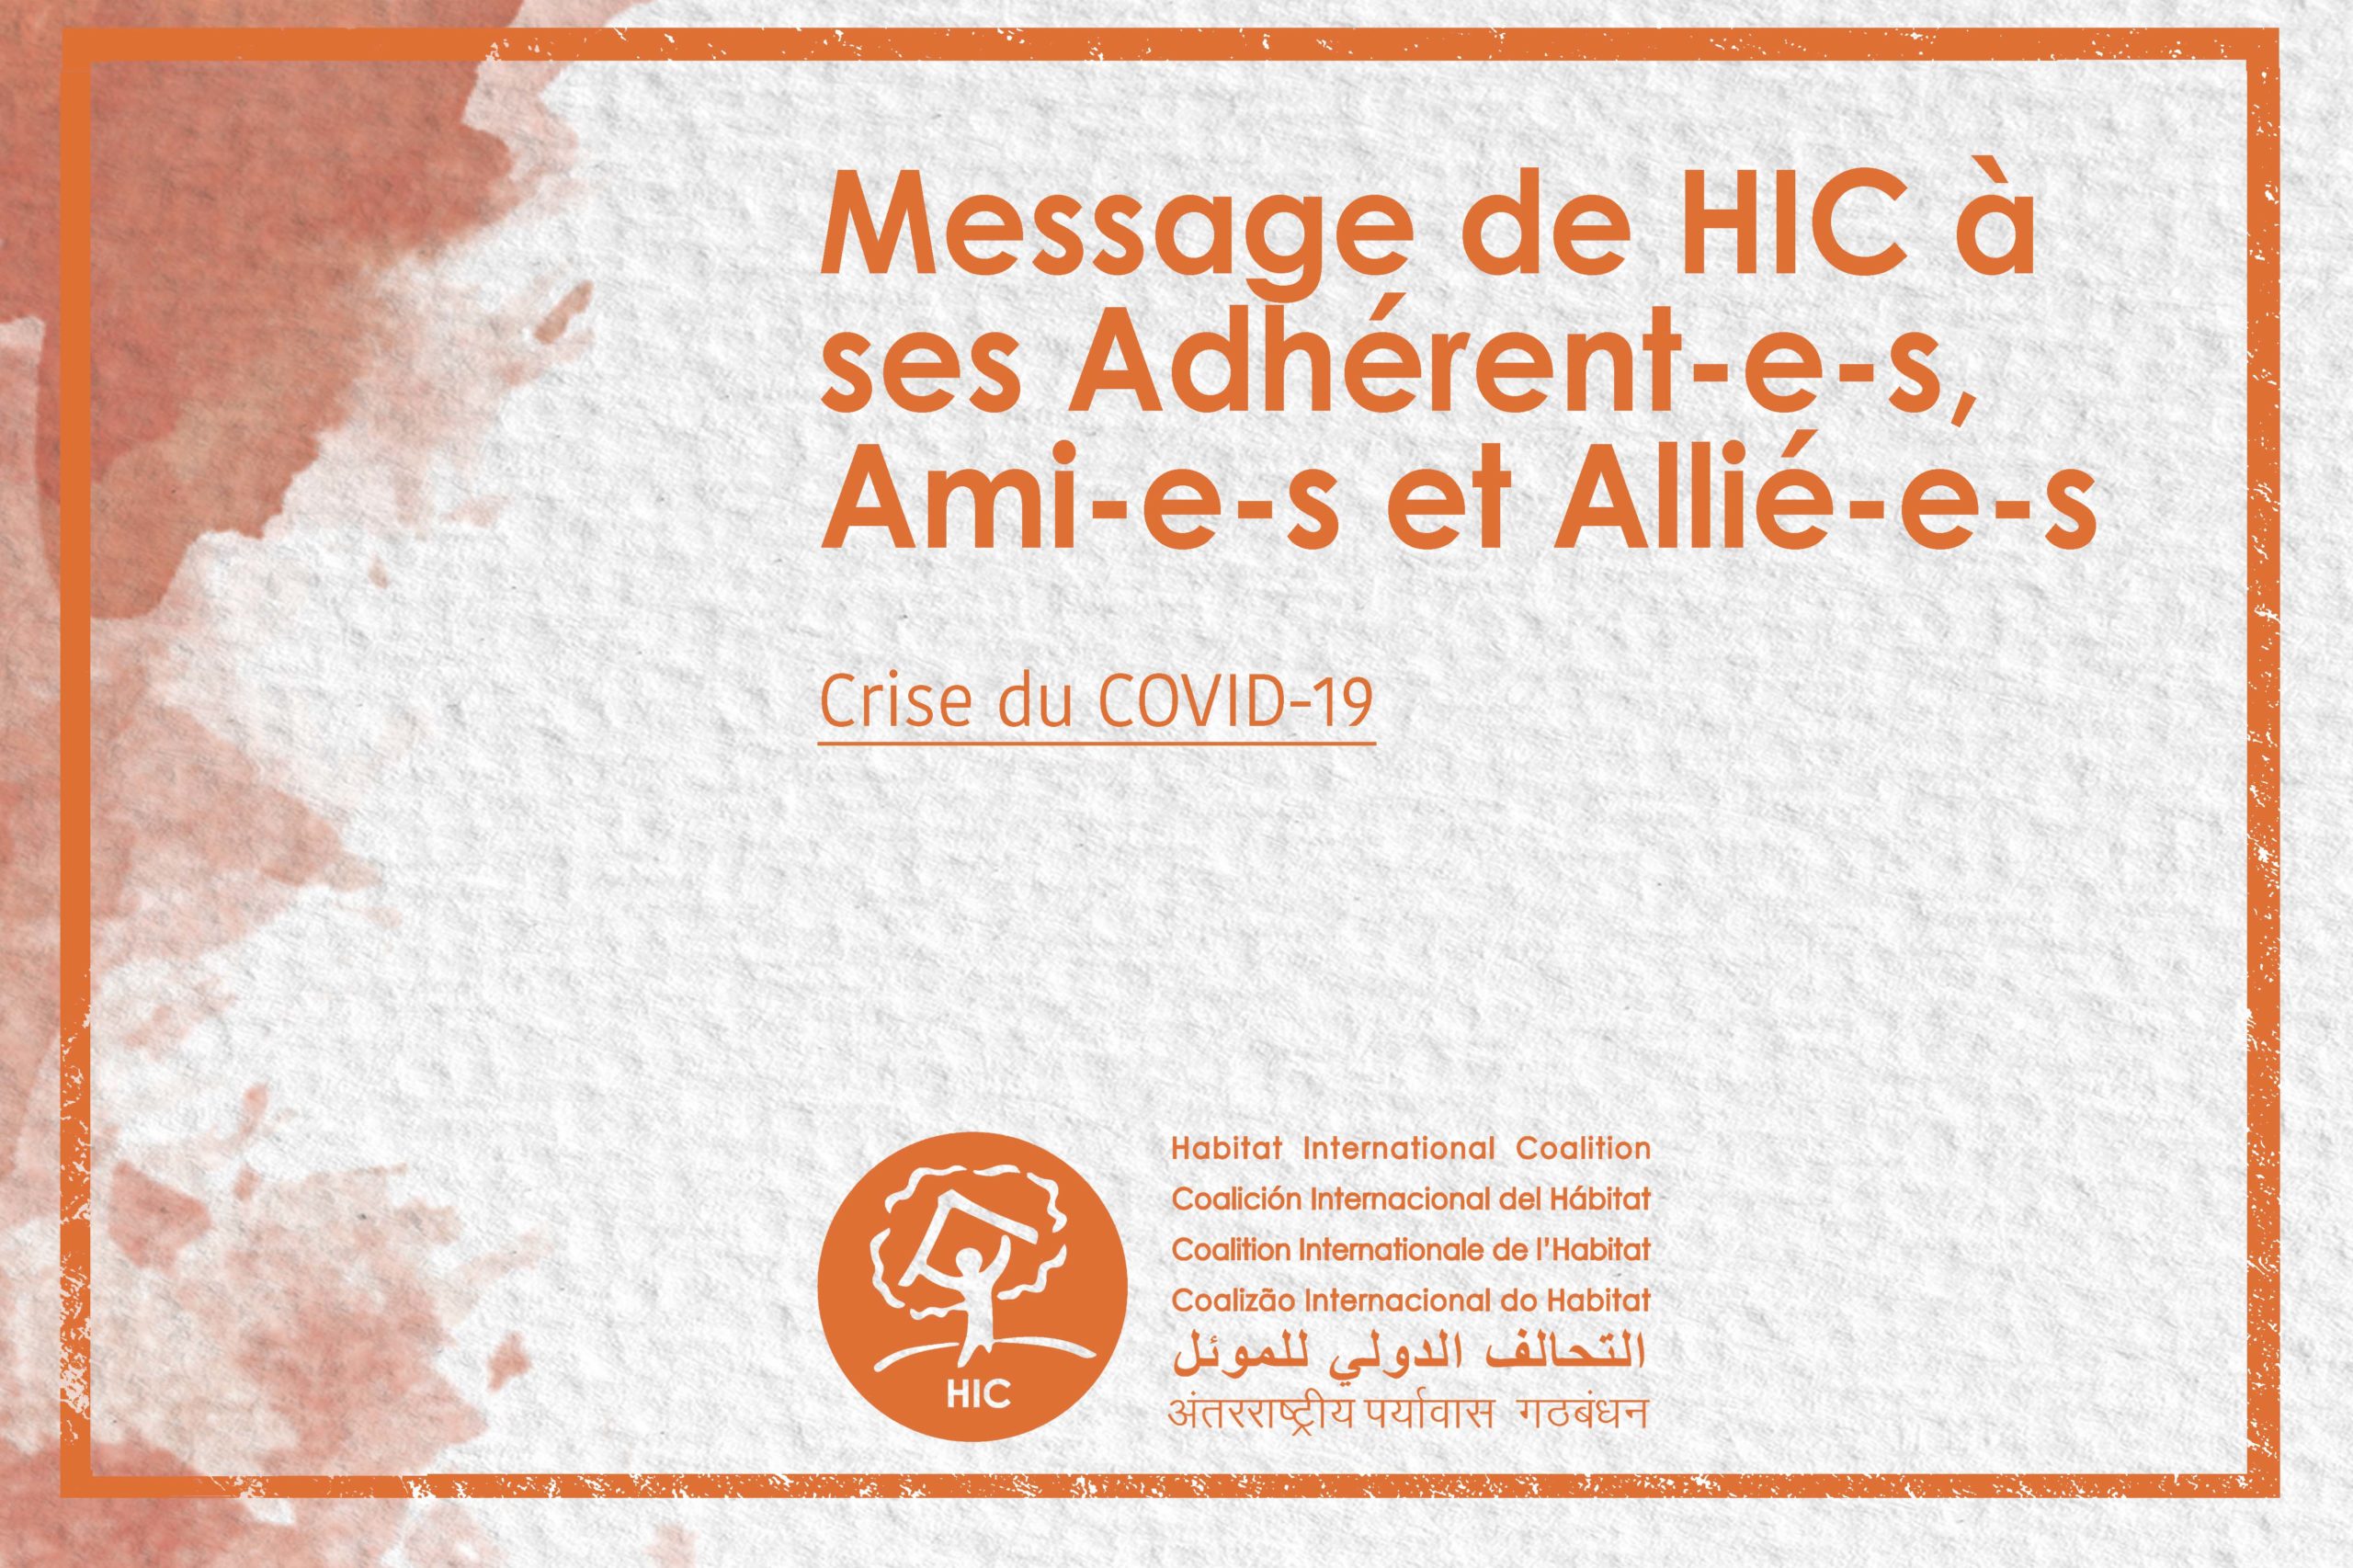 Crise du COVID-19: Message de HIC à ses Adhérent-e-s, Ami-e-s et Allié-e-s